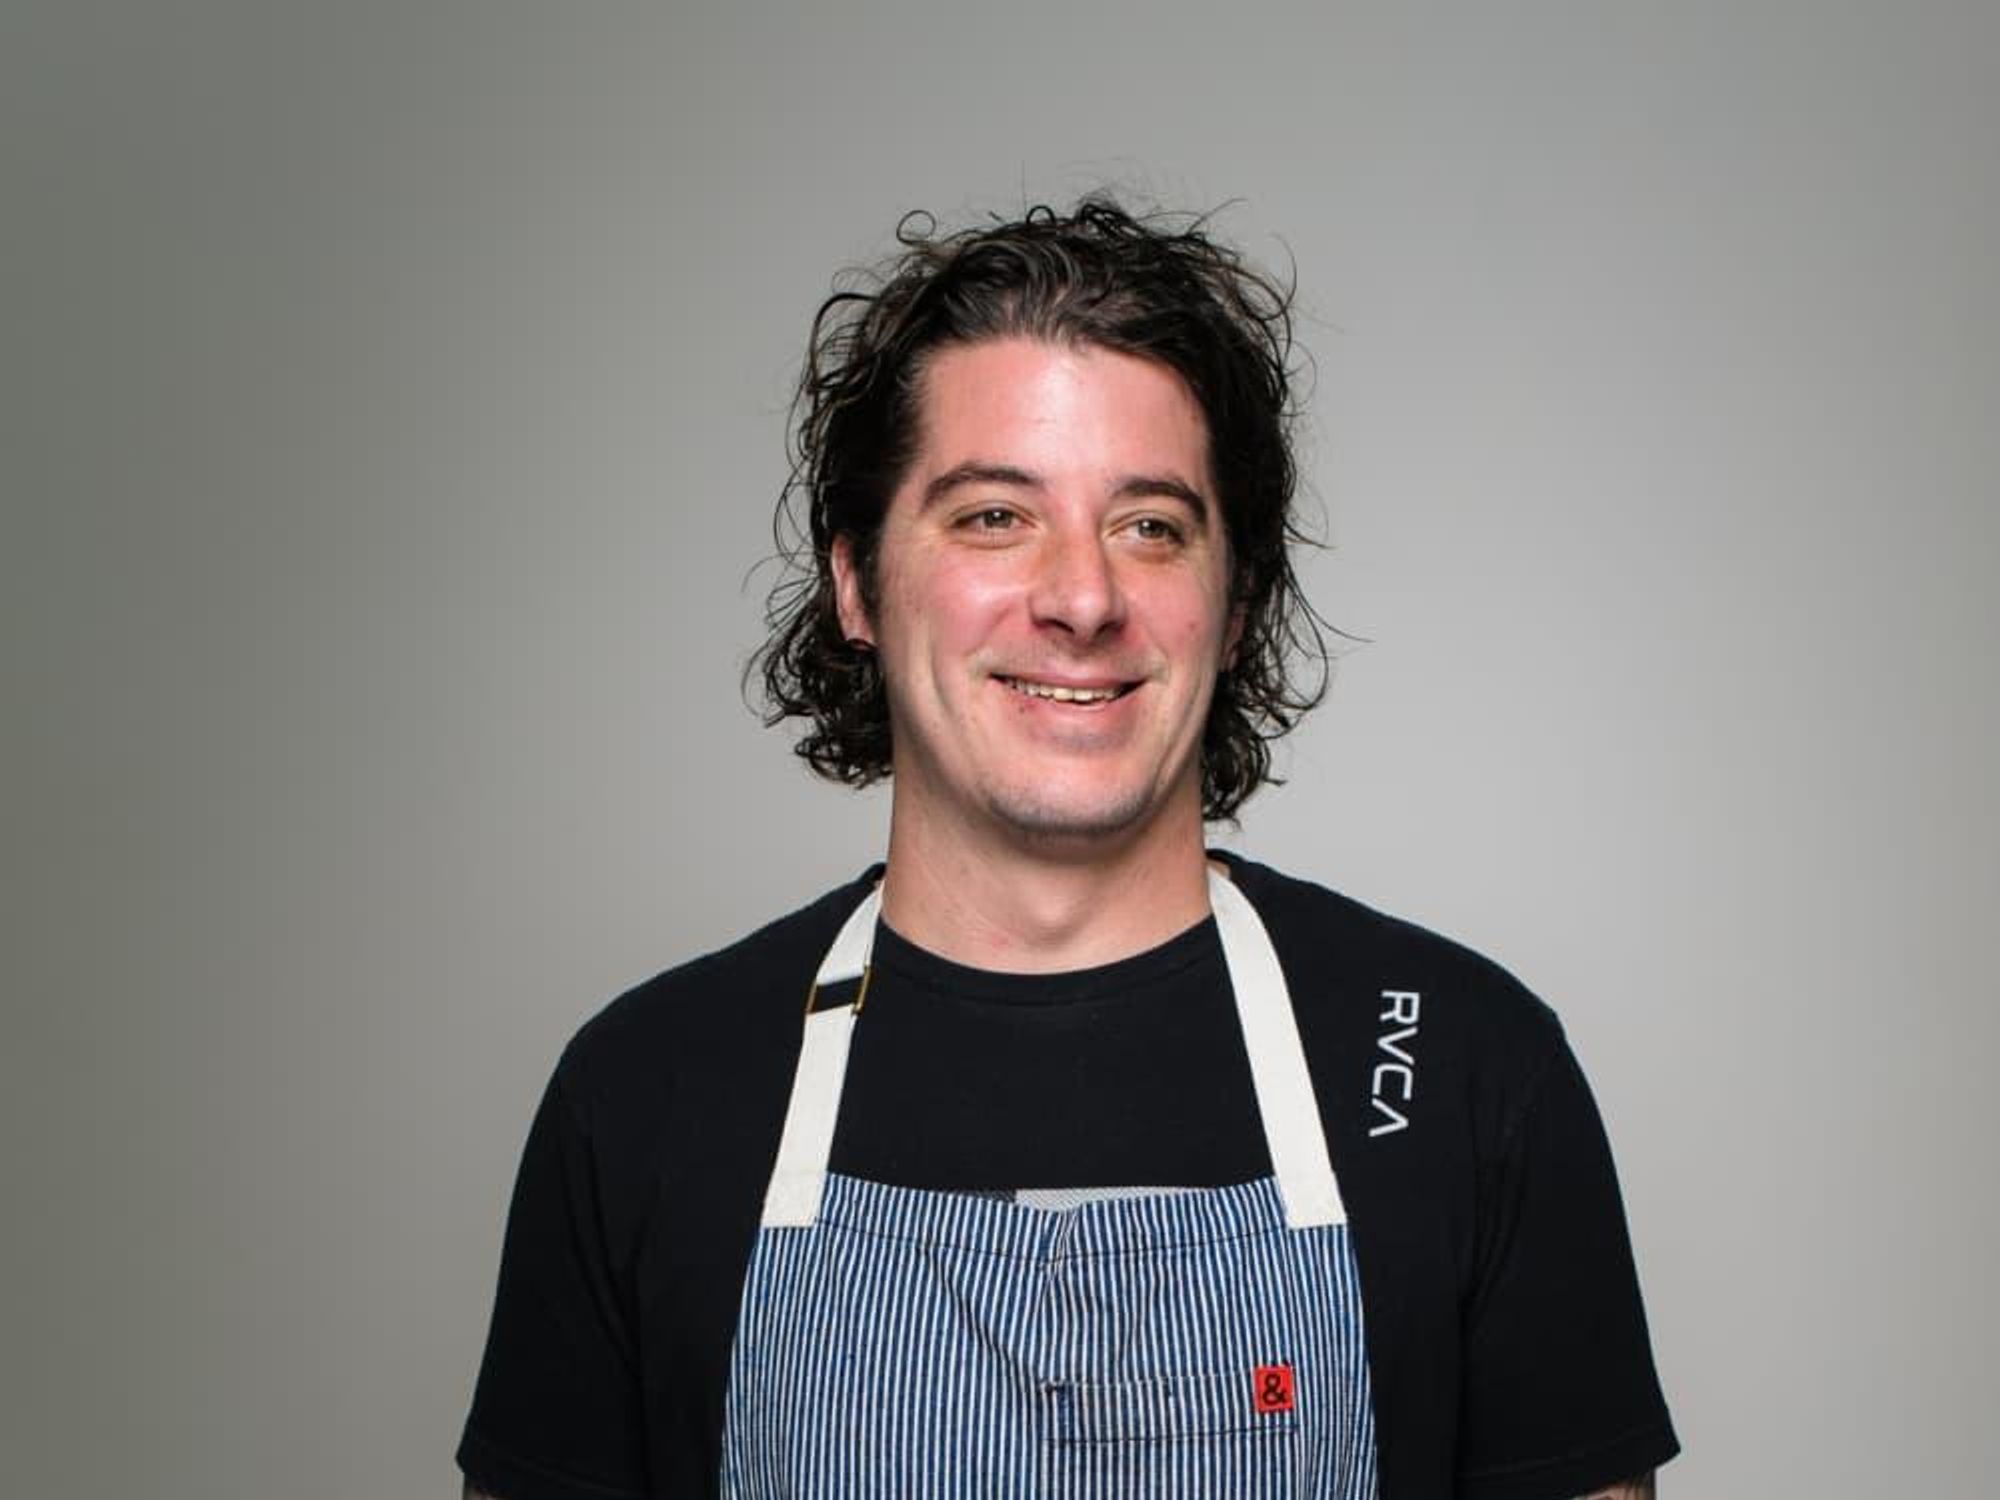 Dallas chef Justin Holt